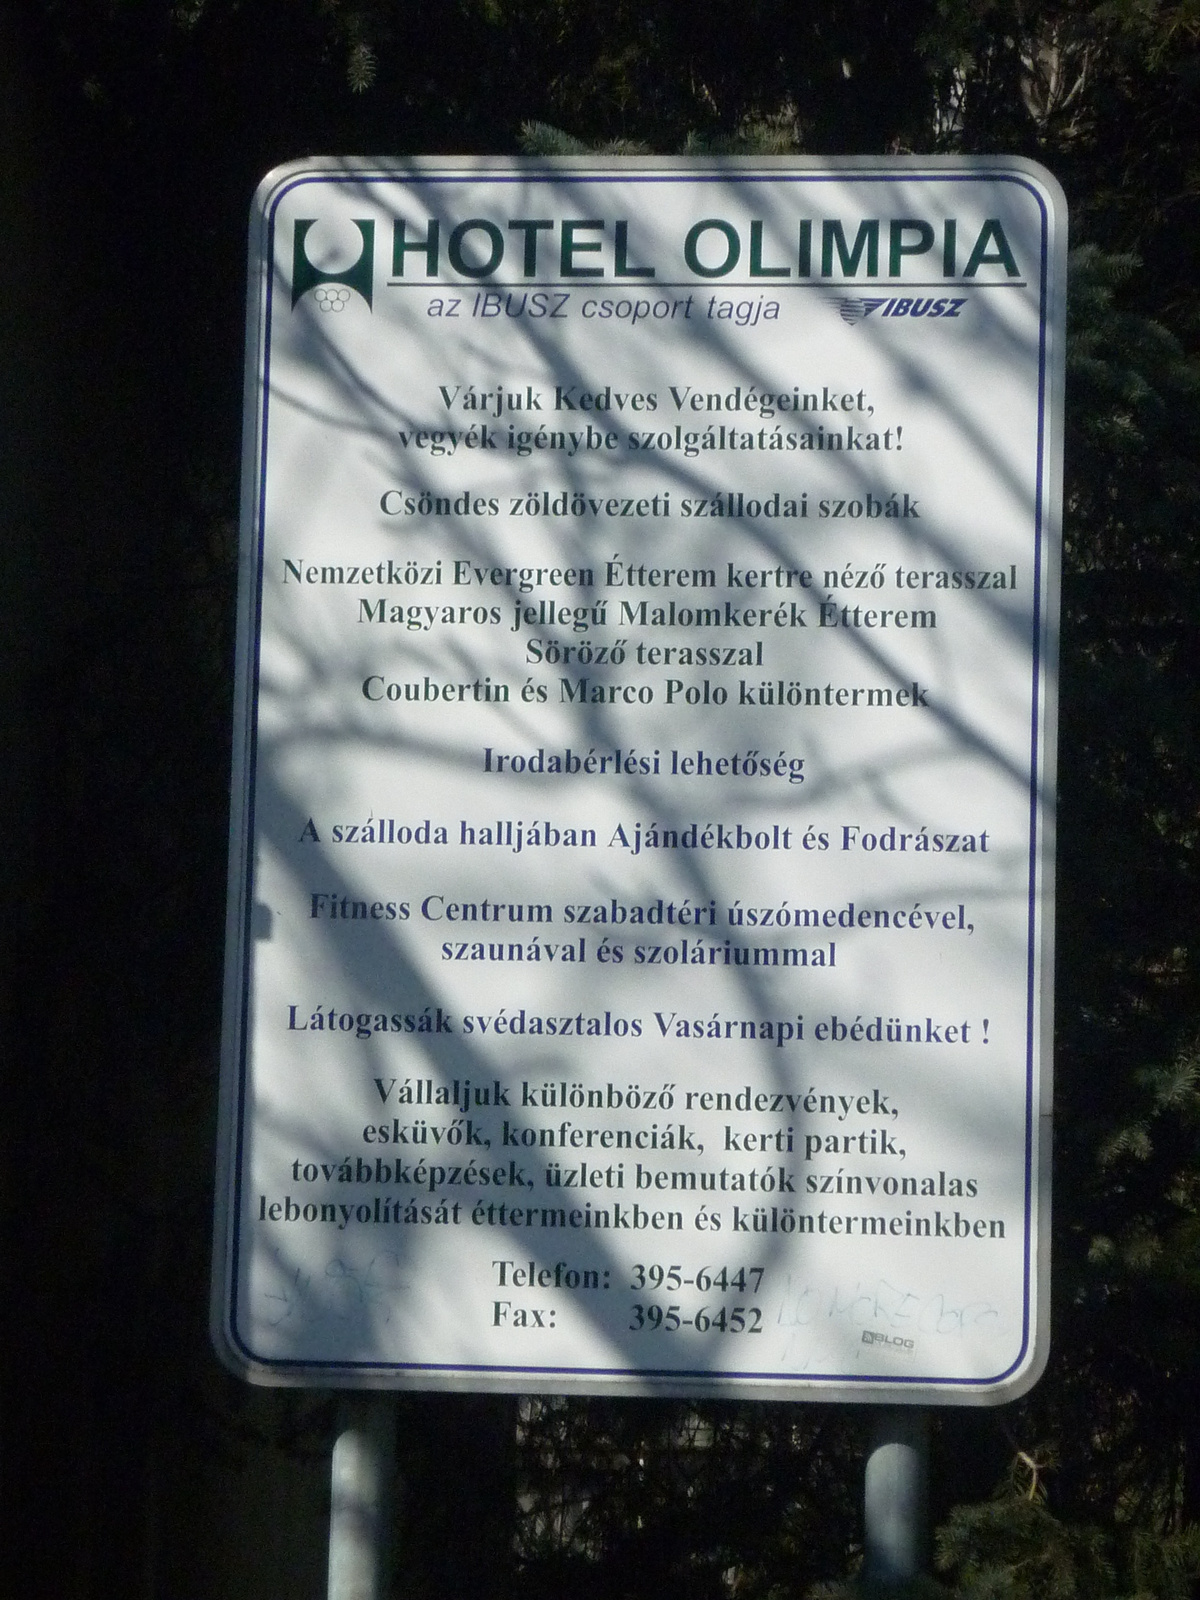 OlimpiaSzallo-20120304-05